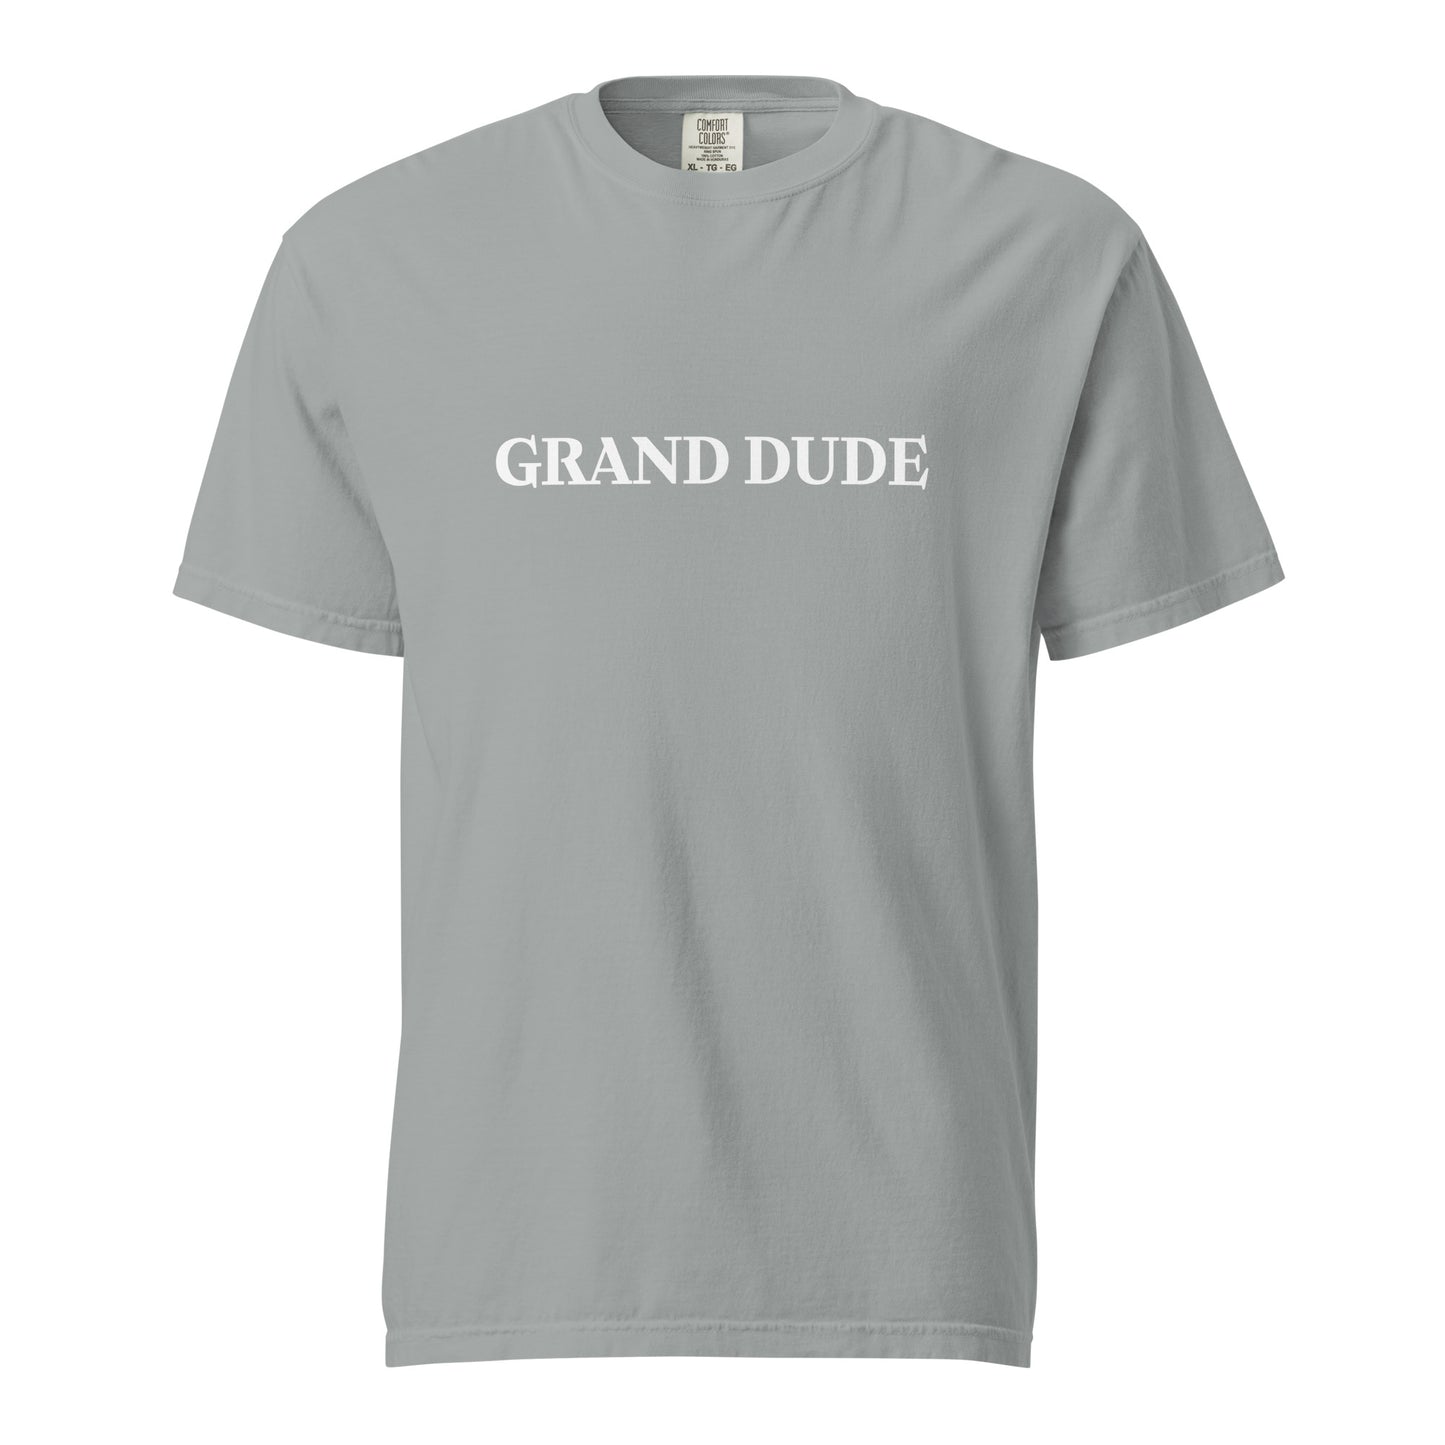 Grand Dude garment-dyed heavyweight t-shirt